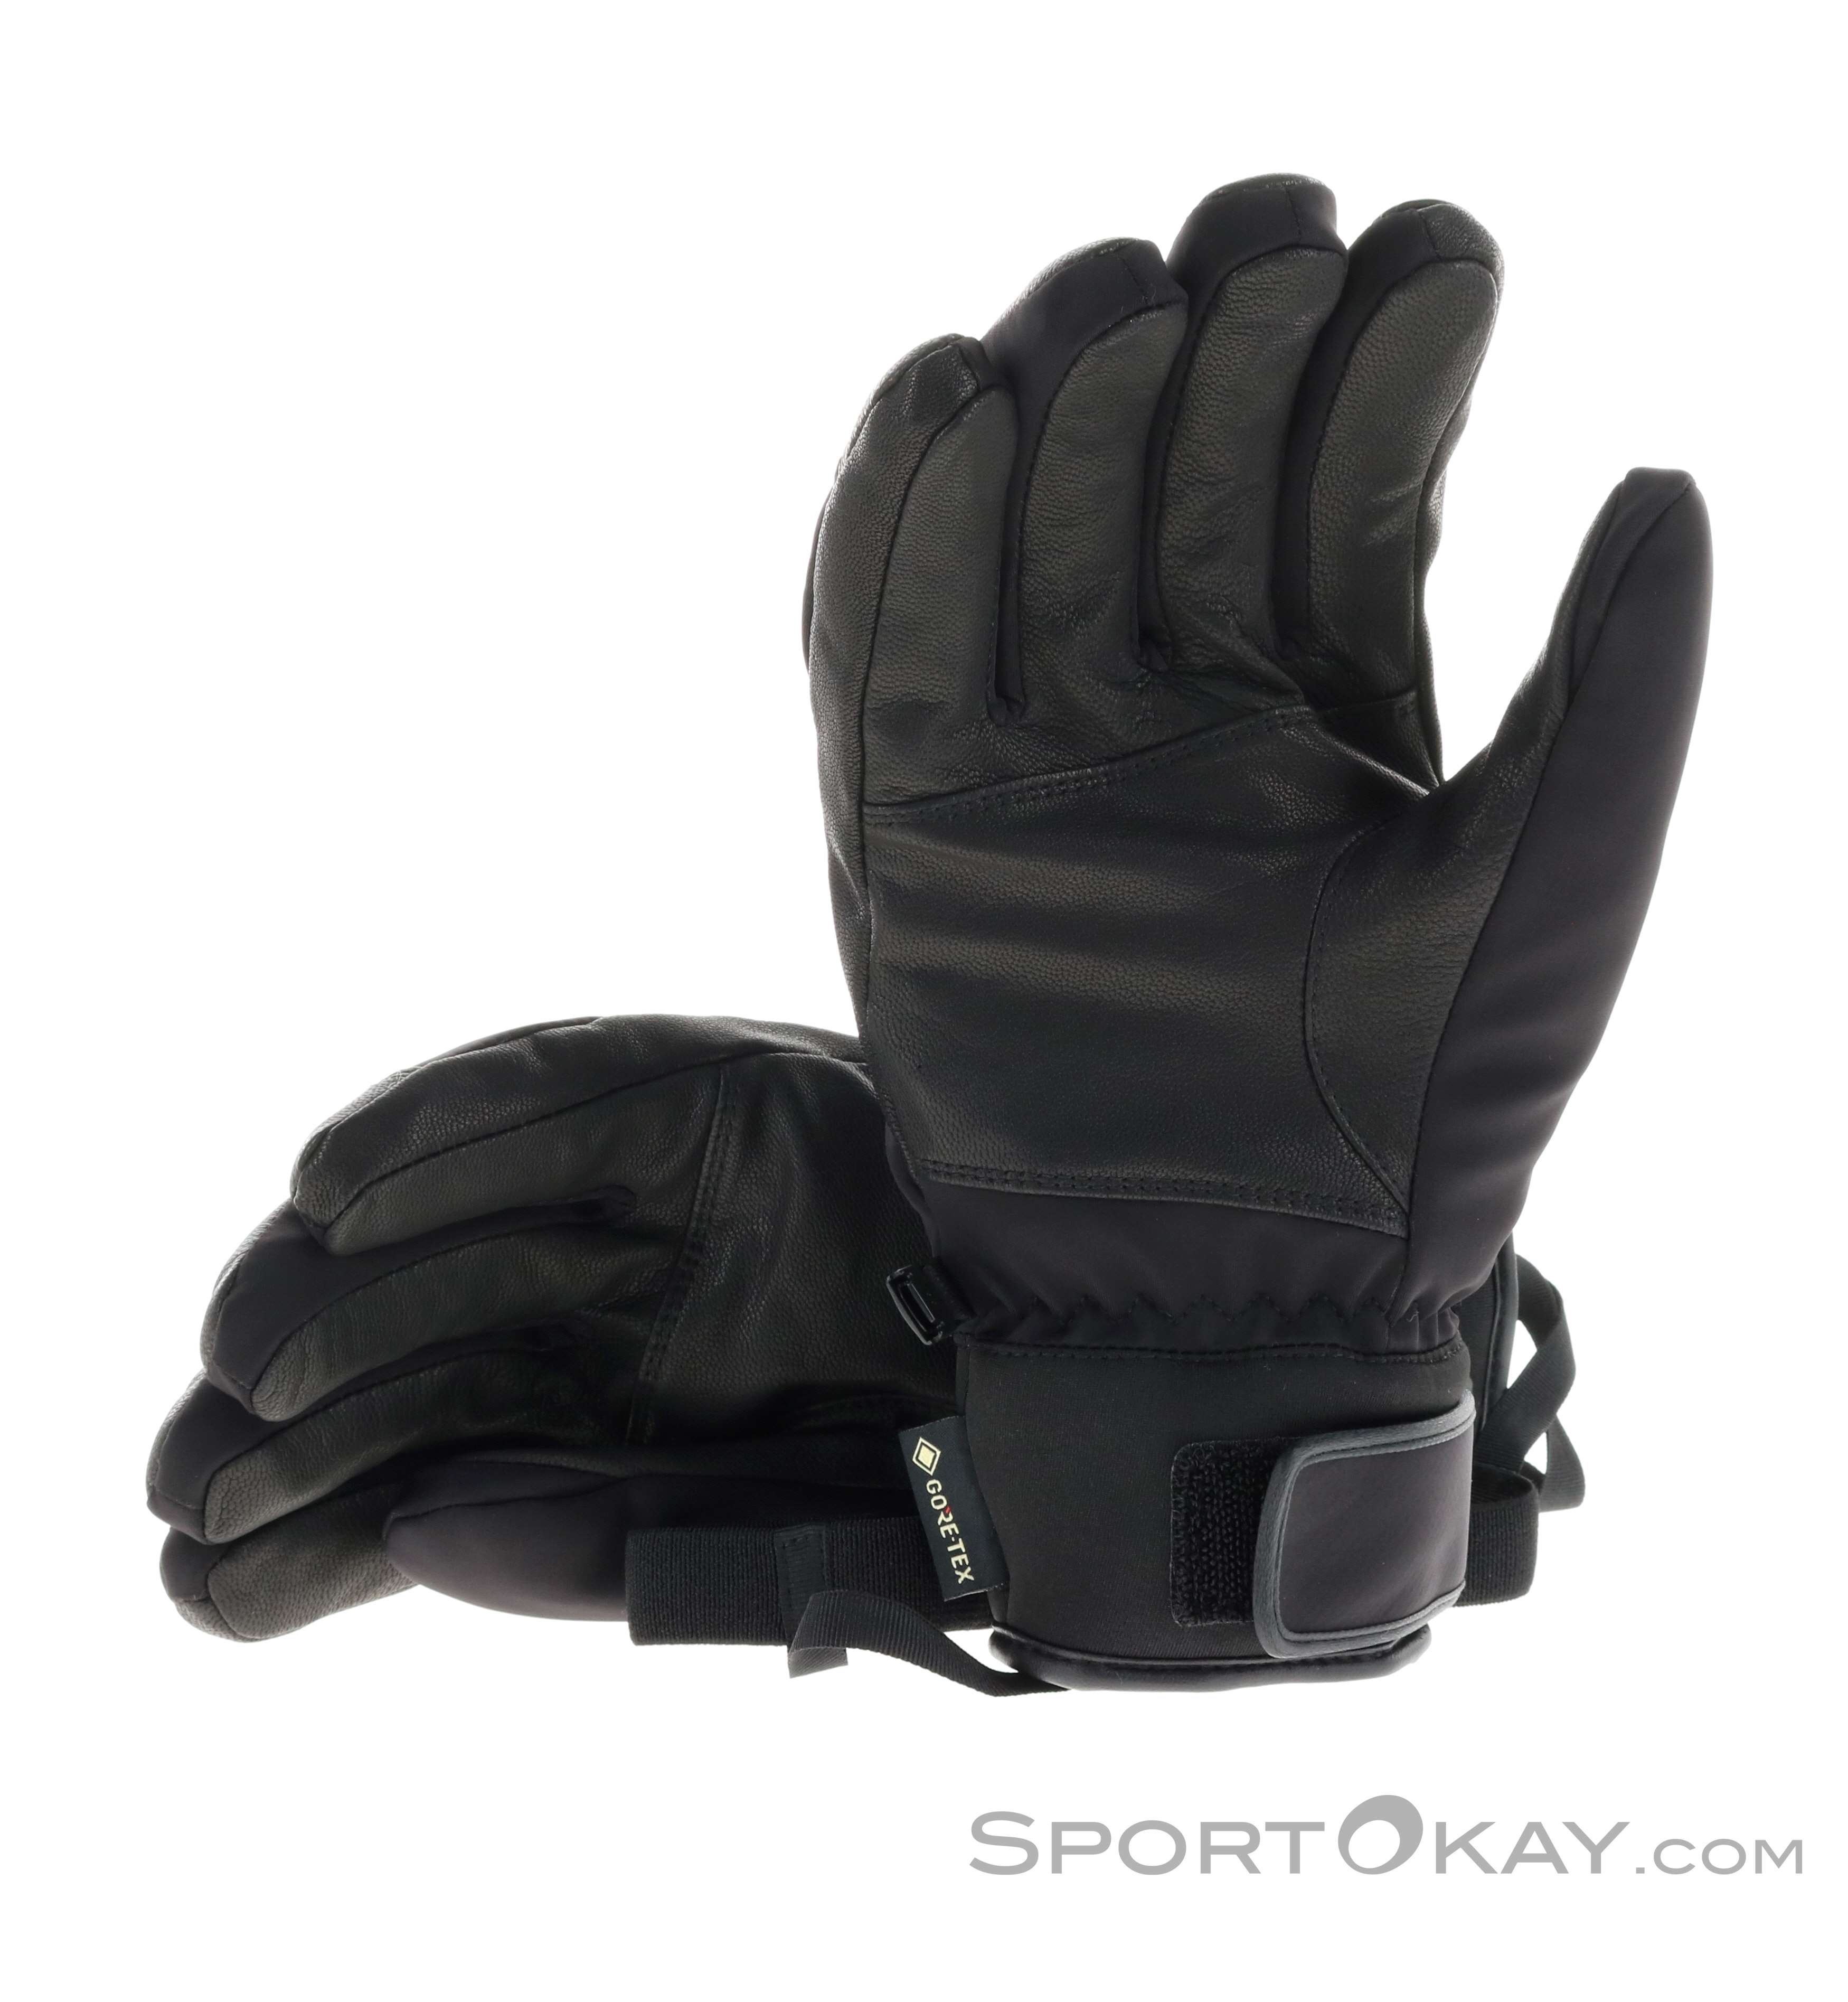 GTX - - Gore-Tex Handschuhe Alle - Jupiter Reusch Outdoor Handschuhe Outdoorbekleidung -